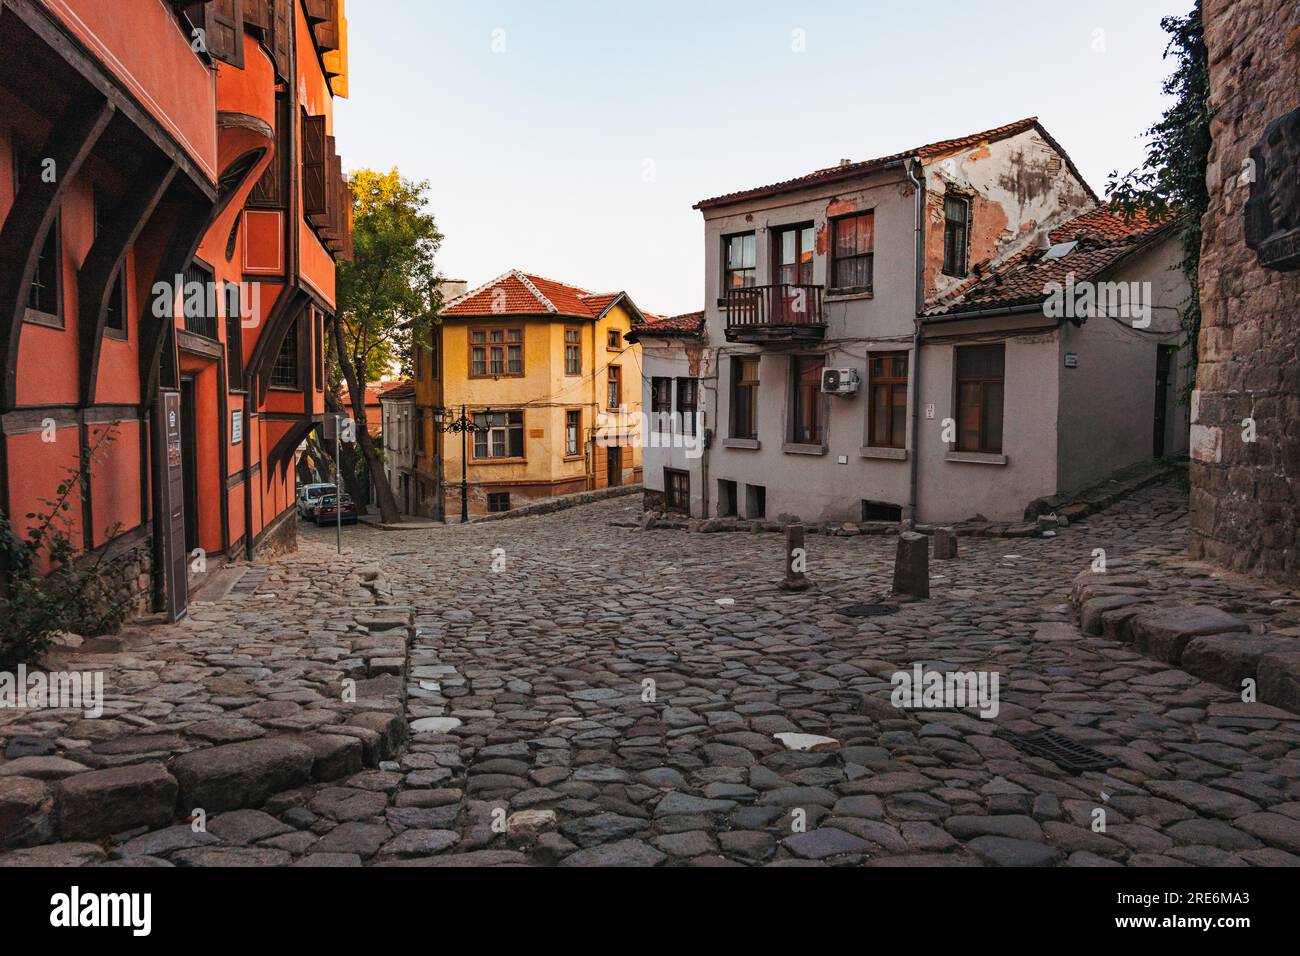 Ein ruhiger Platz im historischen Zentrum von Plowdiw, Bulgarien. Umgeben von traditioneller bulgarischer Revival-Architektur Stockfoto